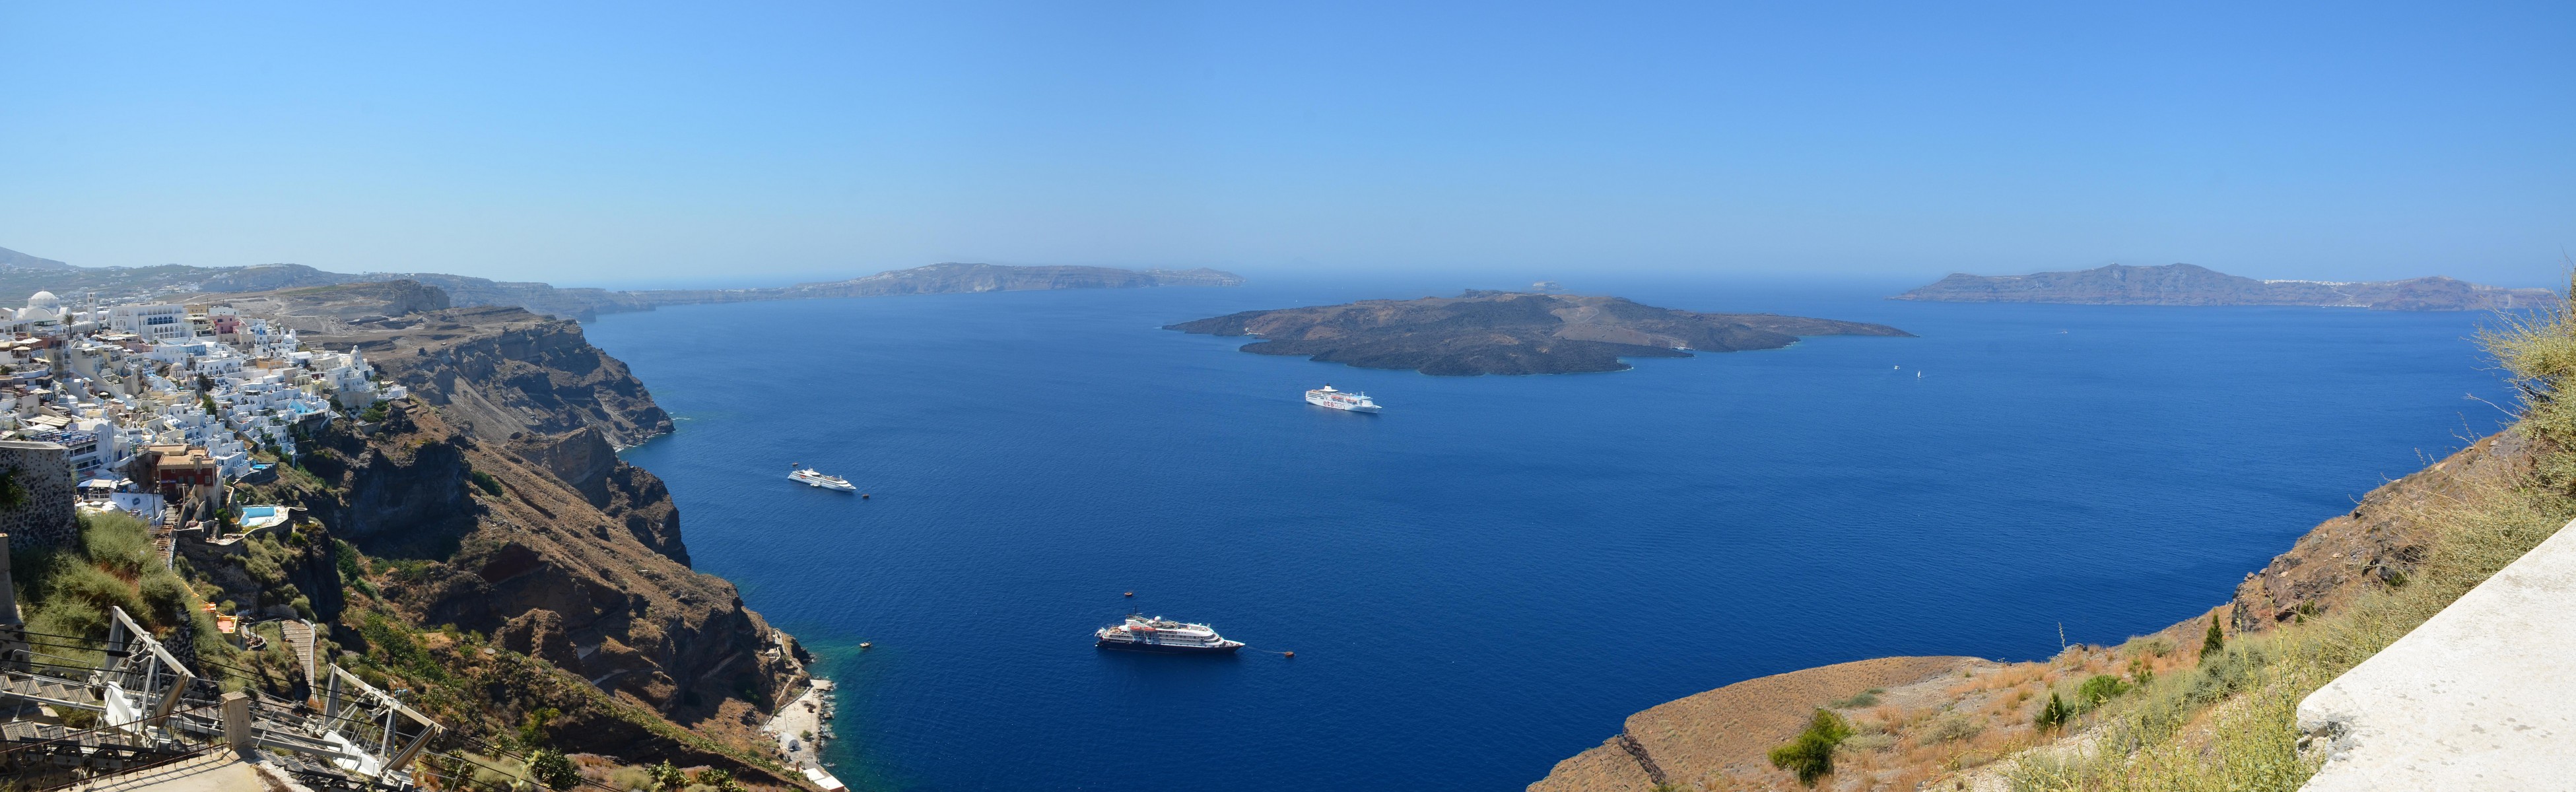 Santorini Island - Greece2.jpg